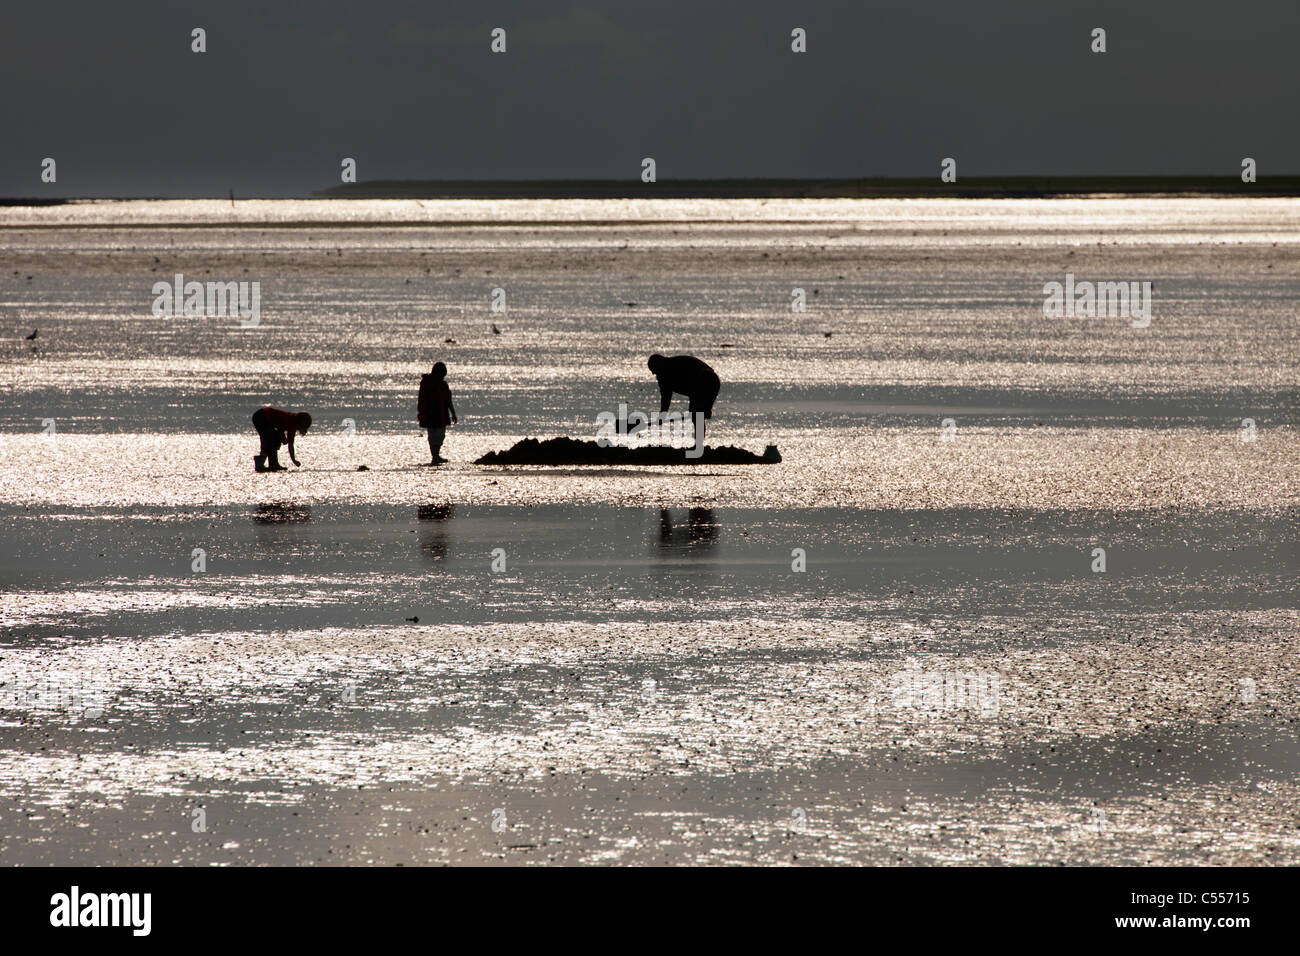 Los Países Bajos, nes, isla de Ameland, perteneciente a las islas del Mar de Wadden. Hombre y niños buscando gusanos de pesca. Foto de stock